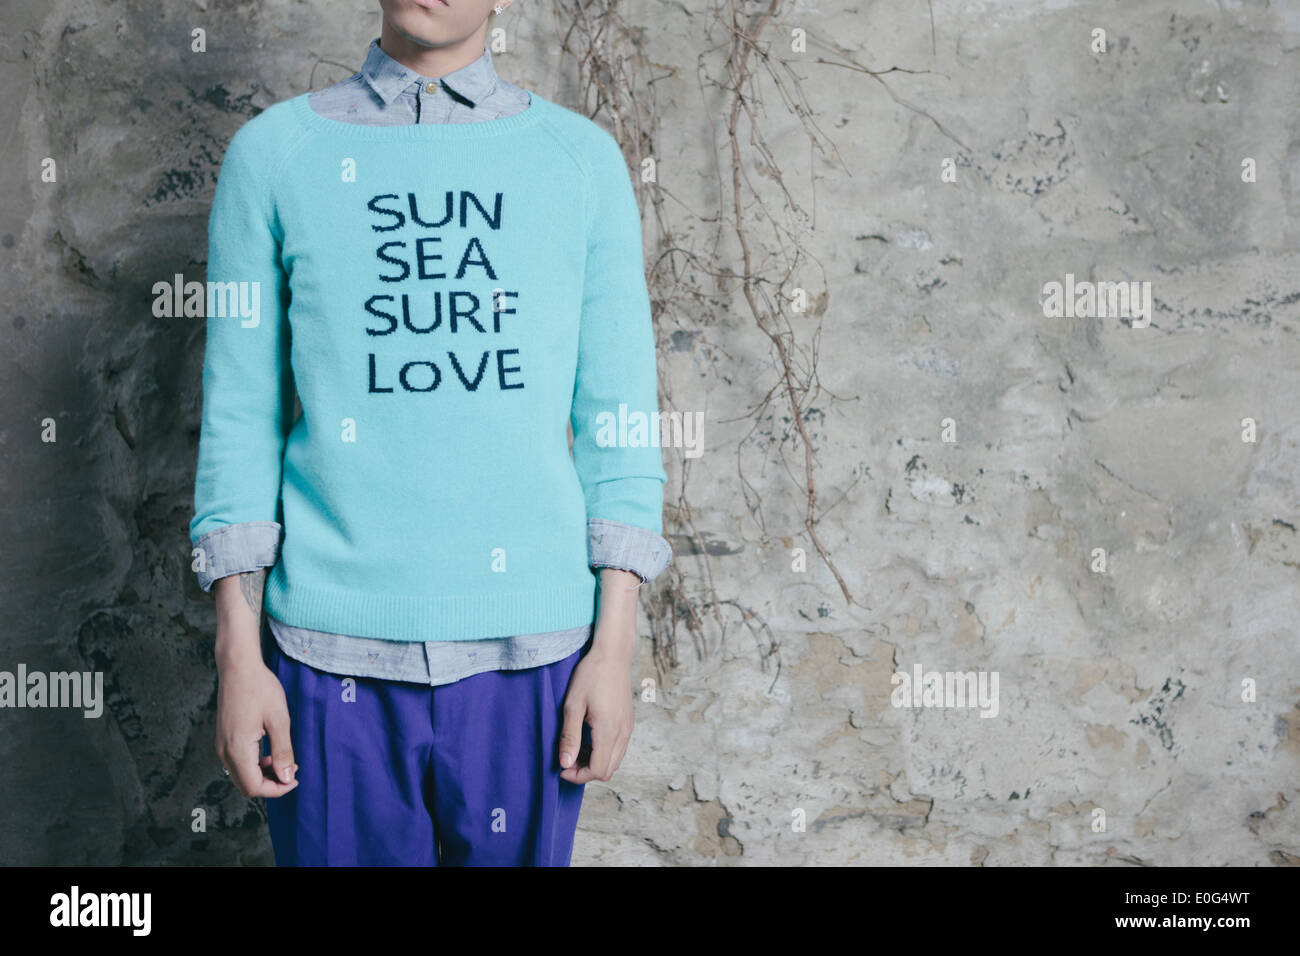 Junger Mann in einem städtischen Umfeld, träumt von Strand und wollen dorthin zu gehen, 'Sonne, Meer, Brandung, Liebe' auf dem Pullover gedruckt. Stockfoto